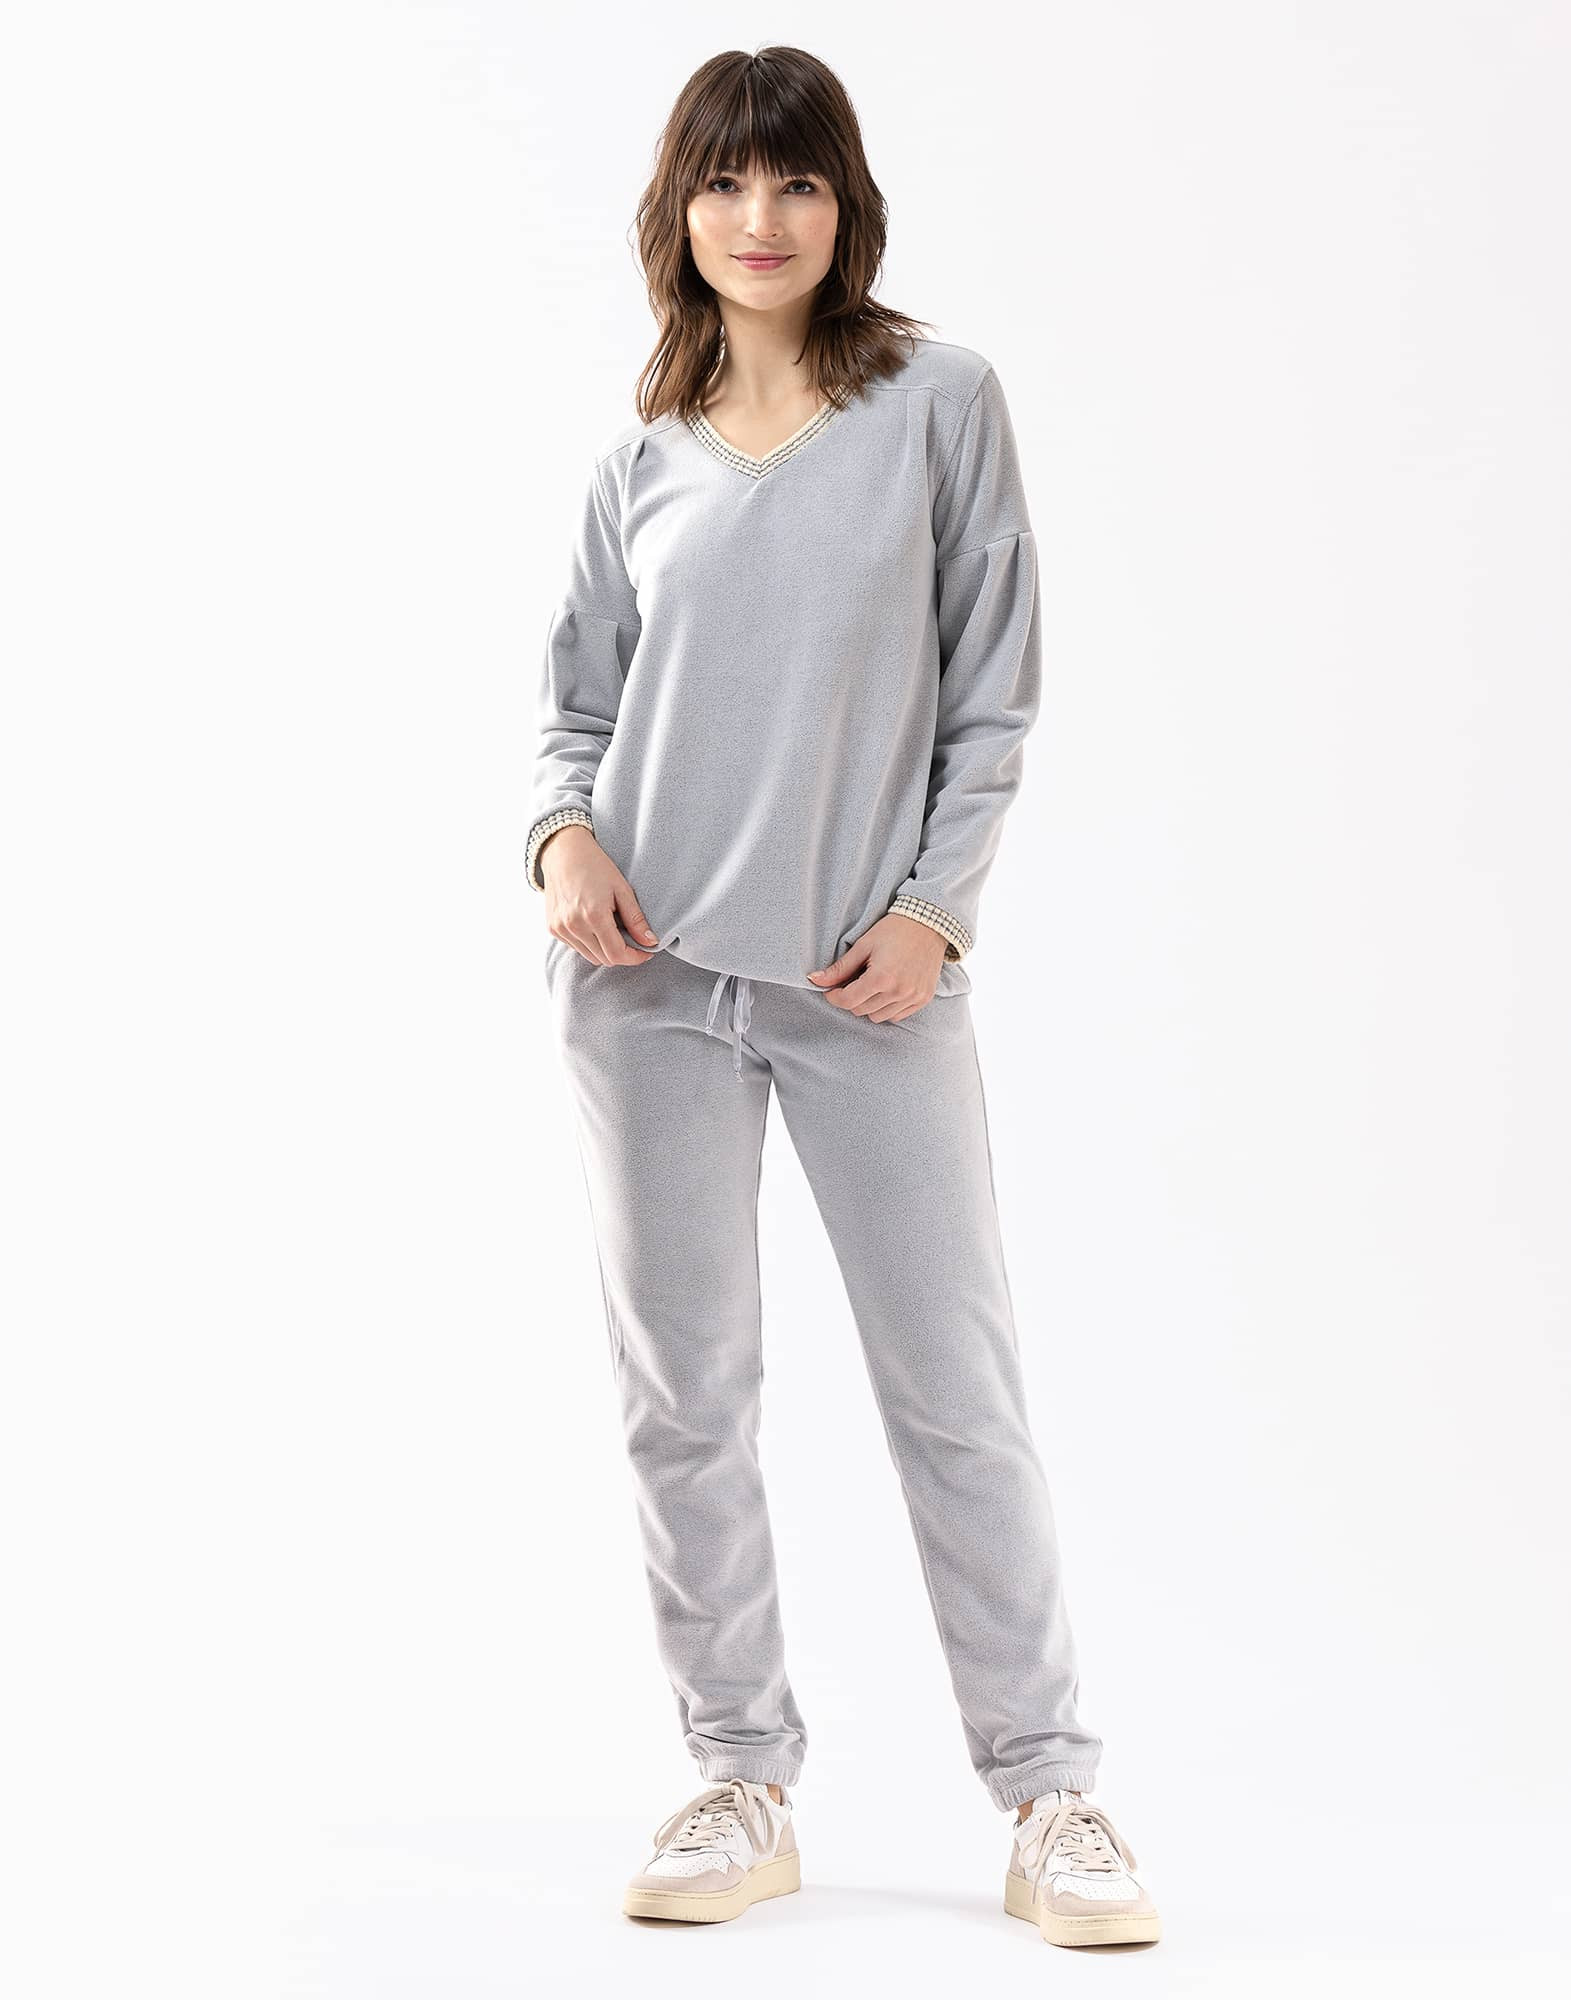 Pyjama long a côtes avec capuche fabrication française- Femme | Kindy